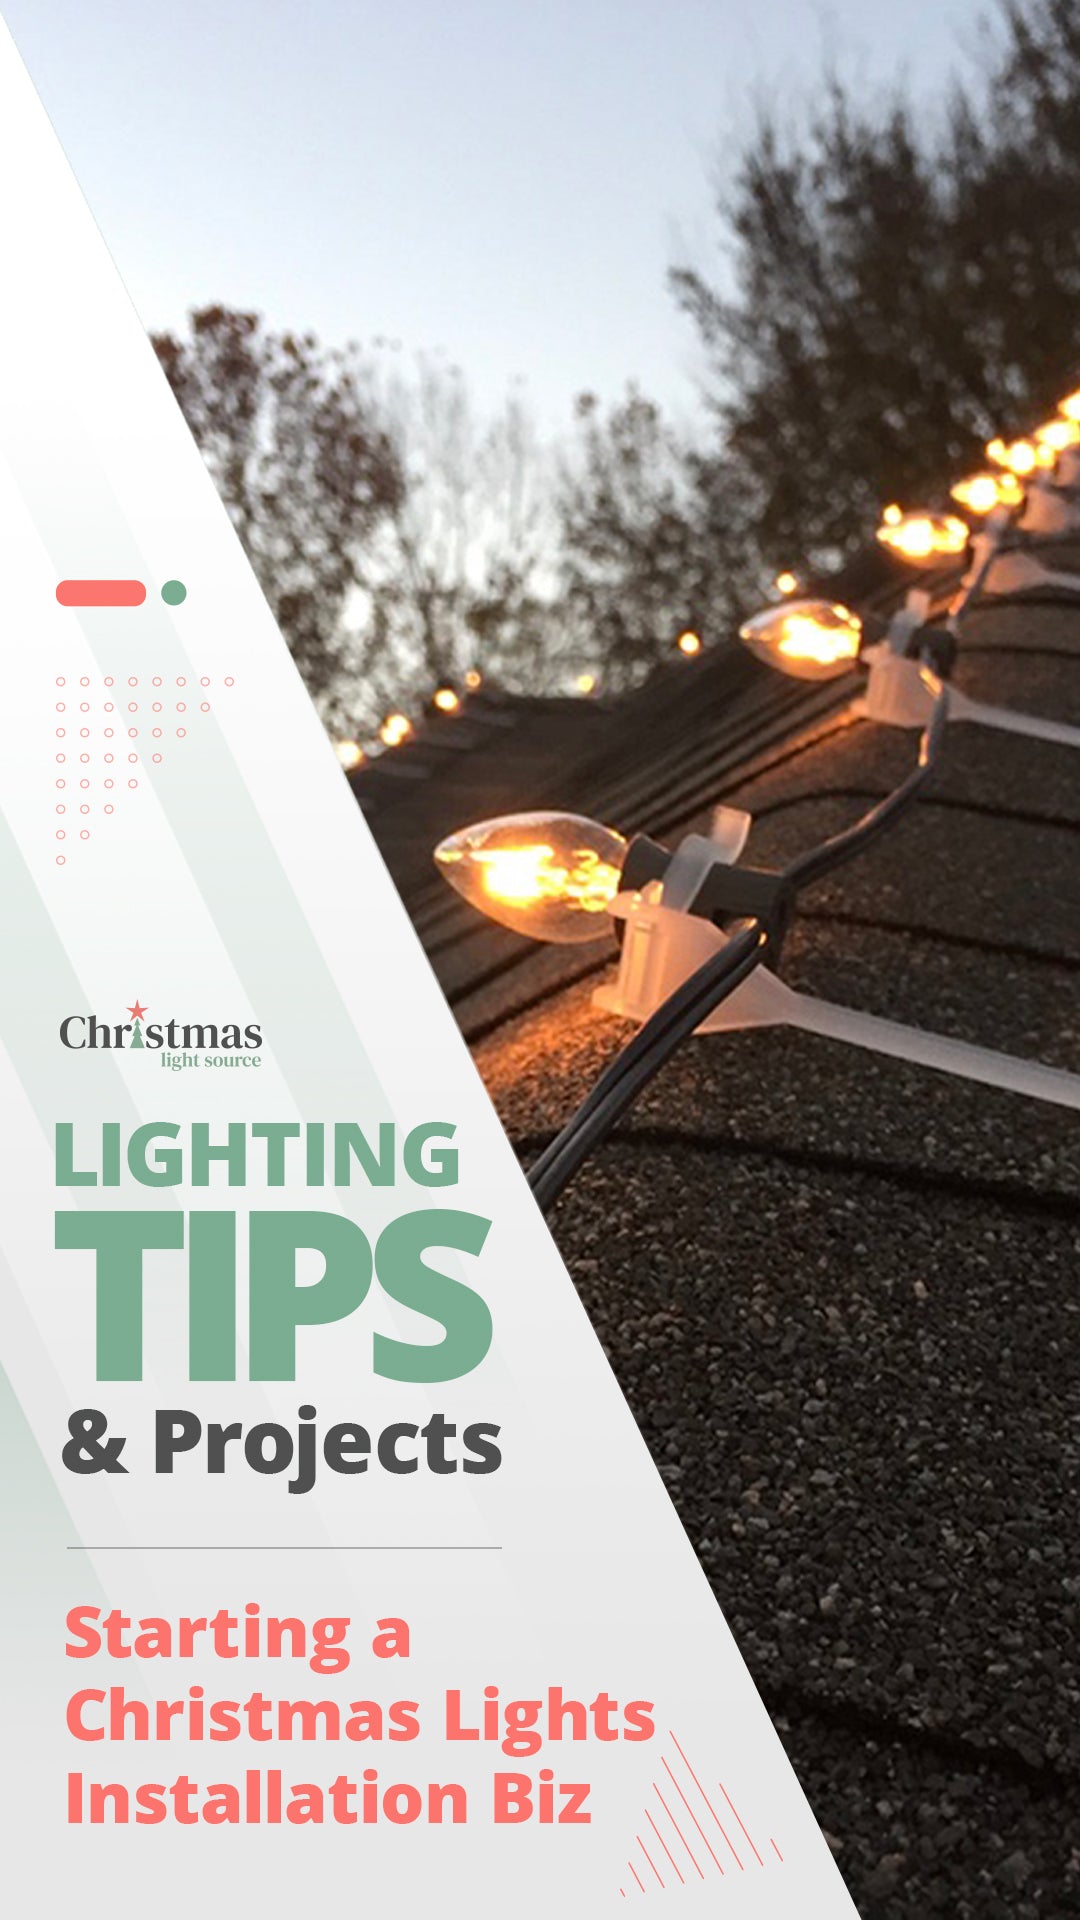 Start a Christmas Lights Installation Business